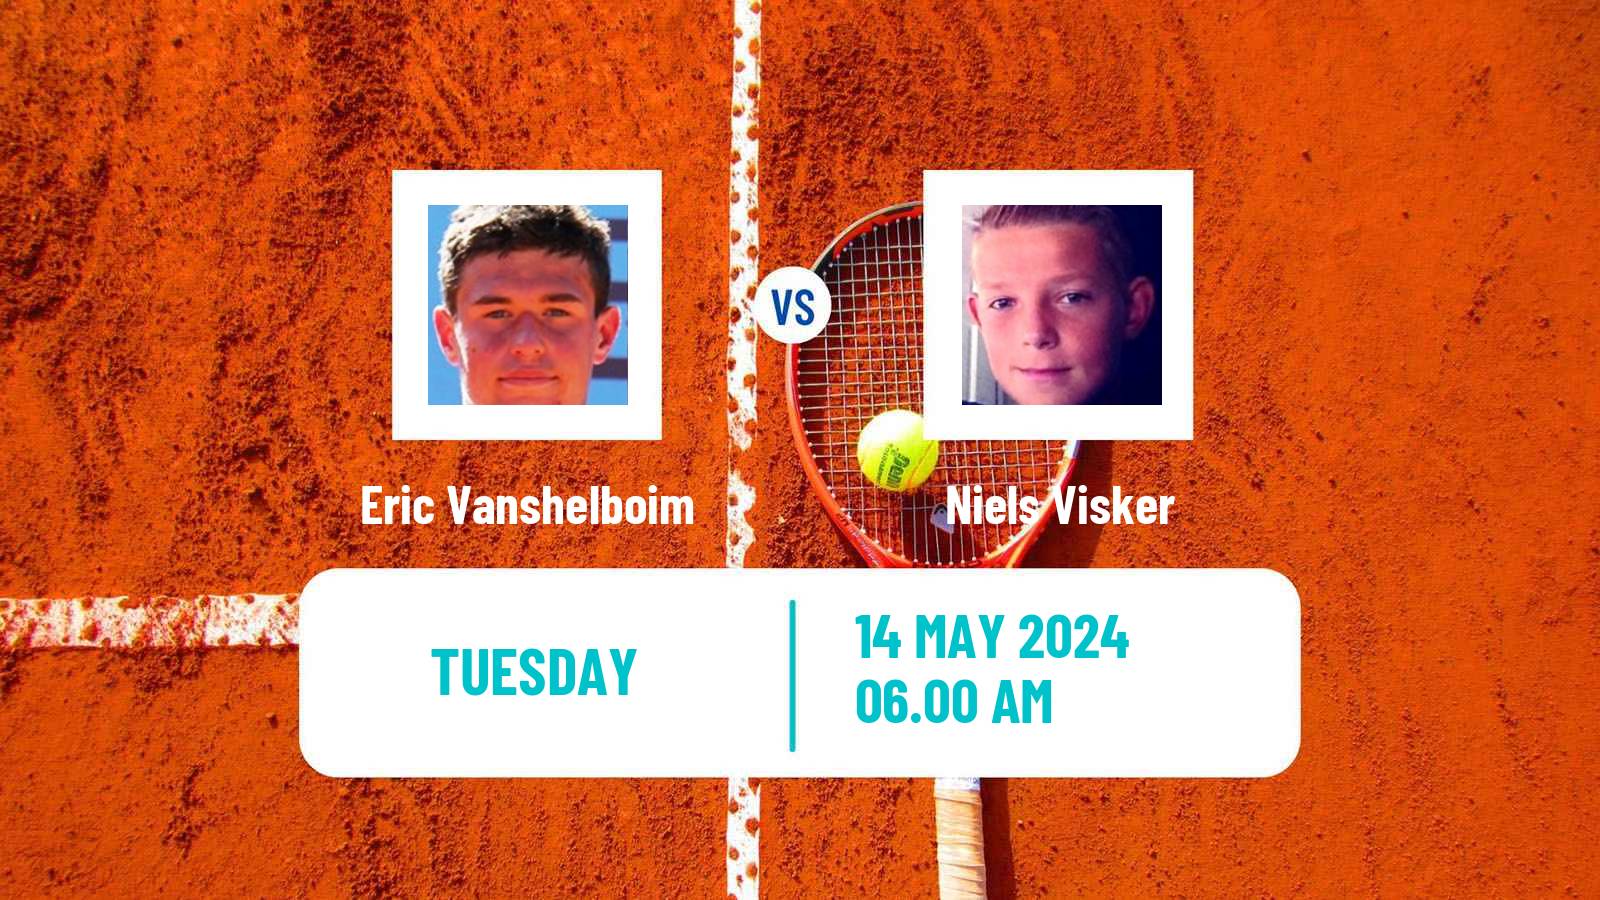 Tennis ITF M15 Bucharest 2 Men Eric Vanshelboim - Niels Visker